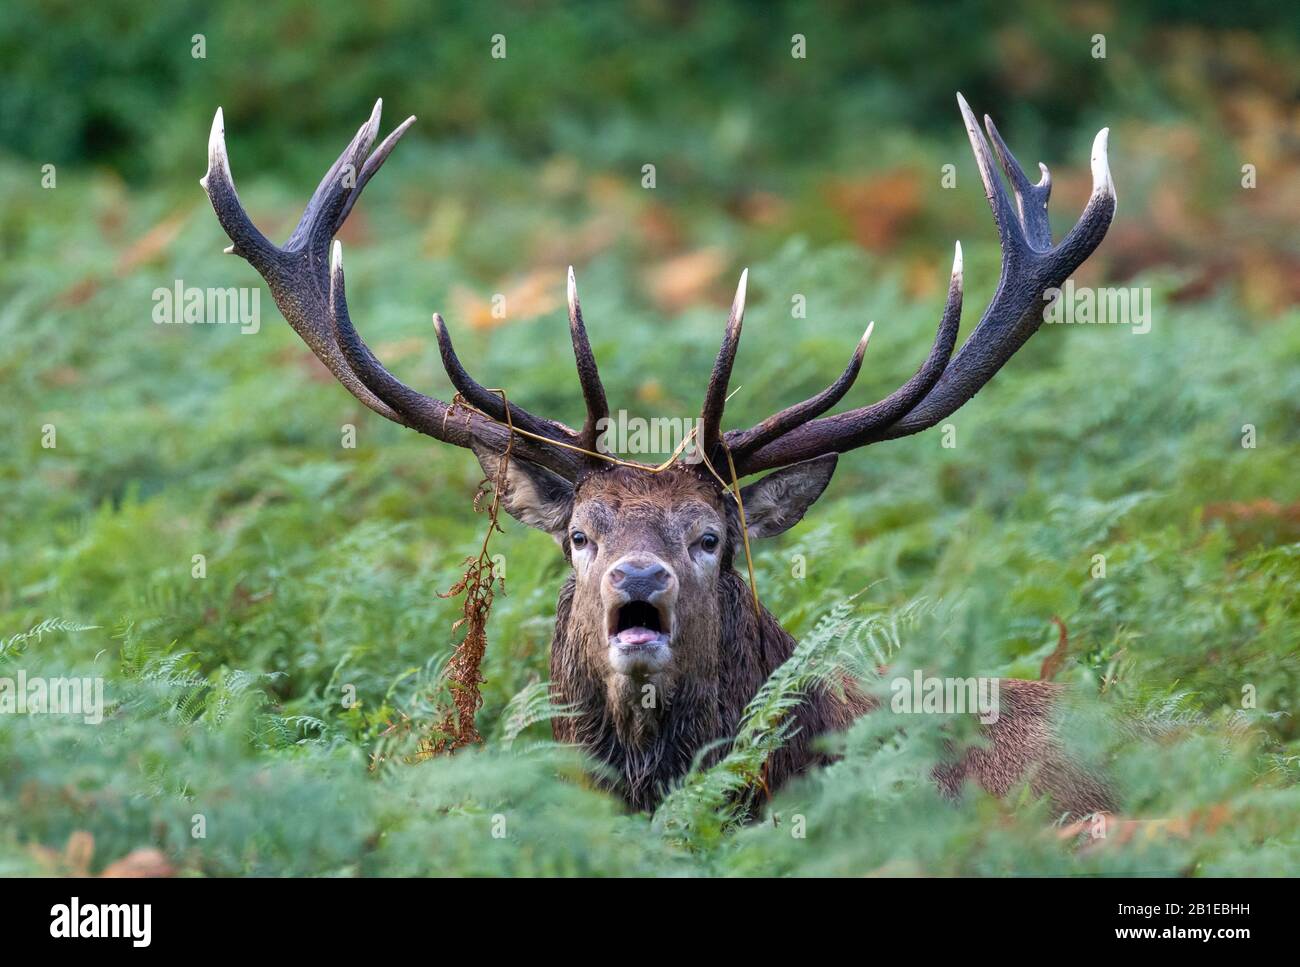 Red deer (Cervus elaphus) standing amongst bracken and bellowing Stock Photo